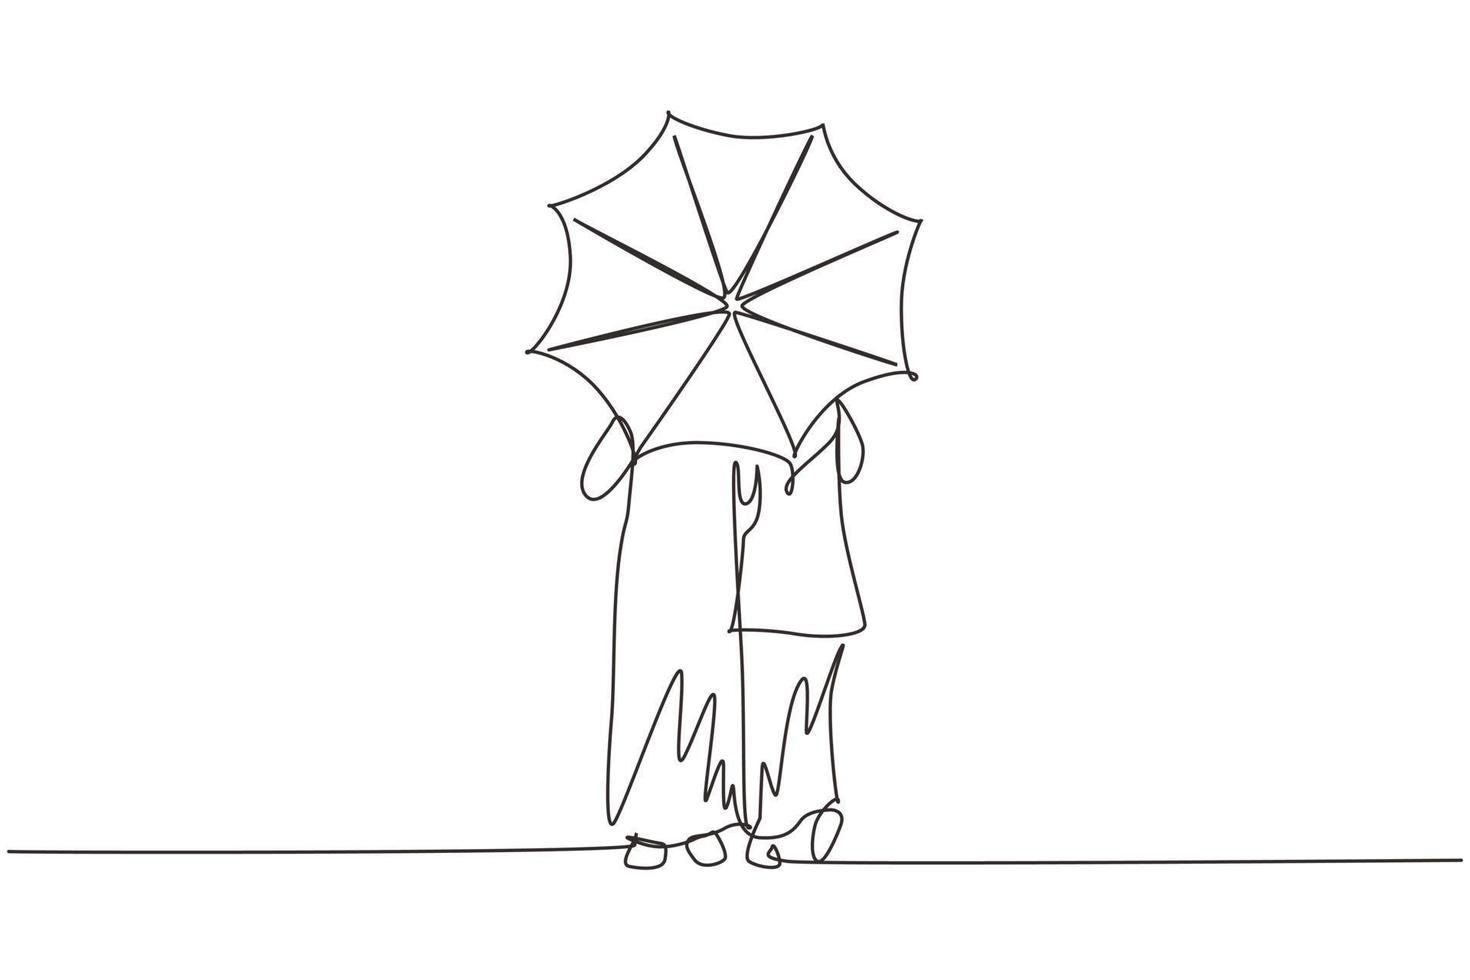 einzelne eine Linie Zeichnung Rückansicht junges arabisches Paar Mann Frau, Mädchen und Junge zu Fuß mit Regenschirm unter Regen. romantisches Paar bei regnerischem Herbstwetter. Design-Grafikvektor mit kontinuierlicher Linie vektor